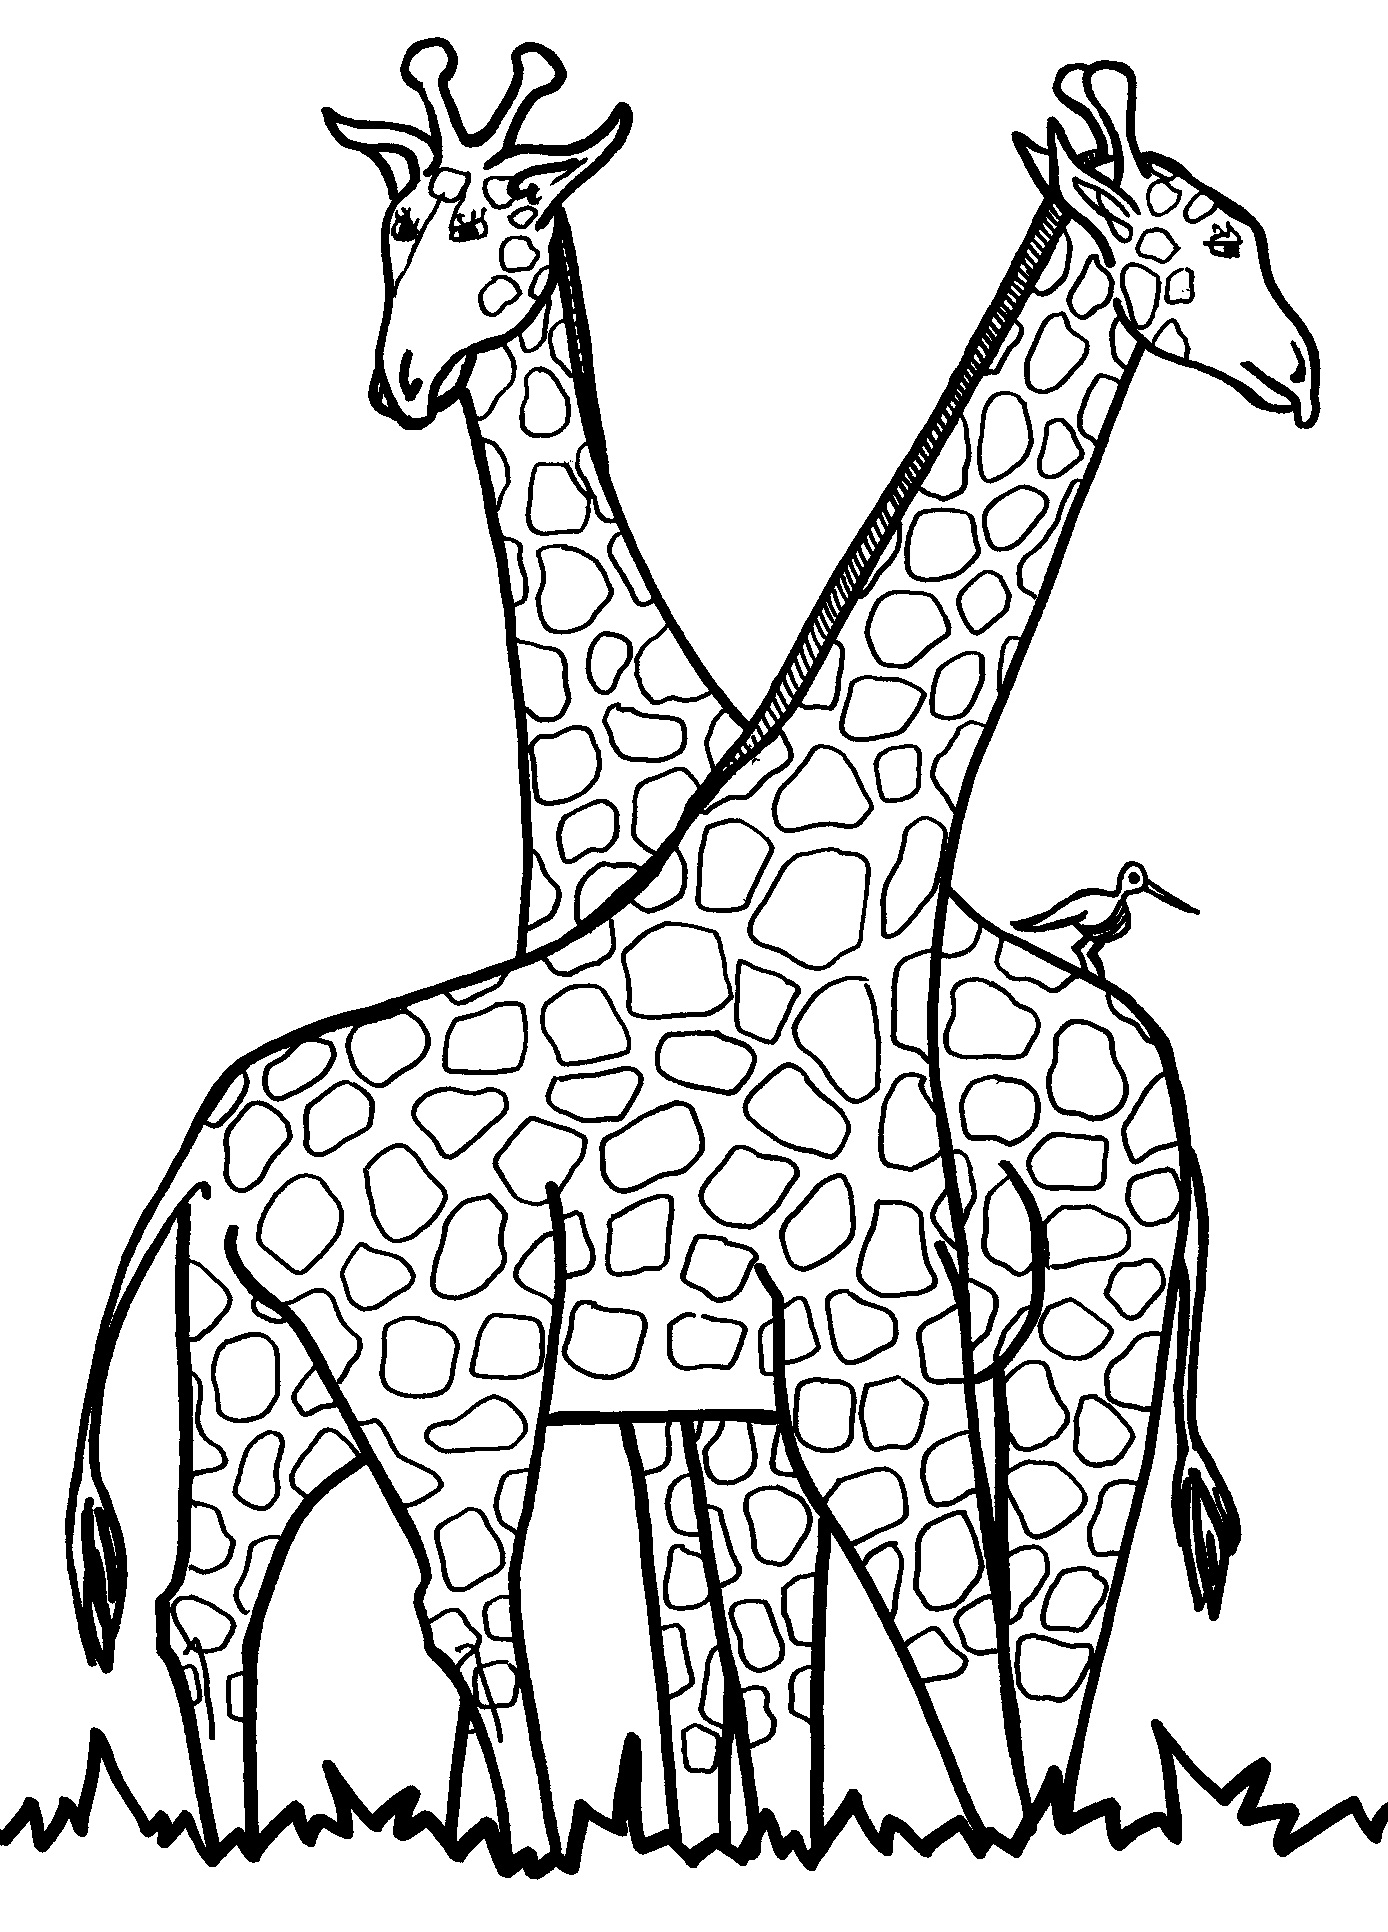 Giraffe Outlines Printable - ClipArt Best